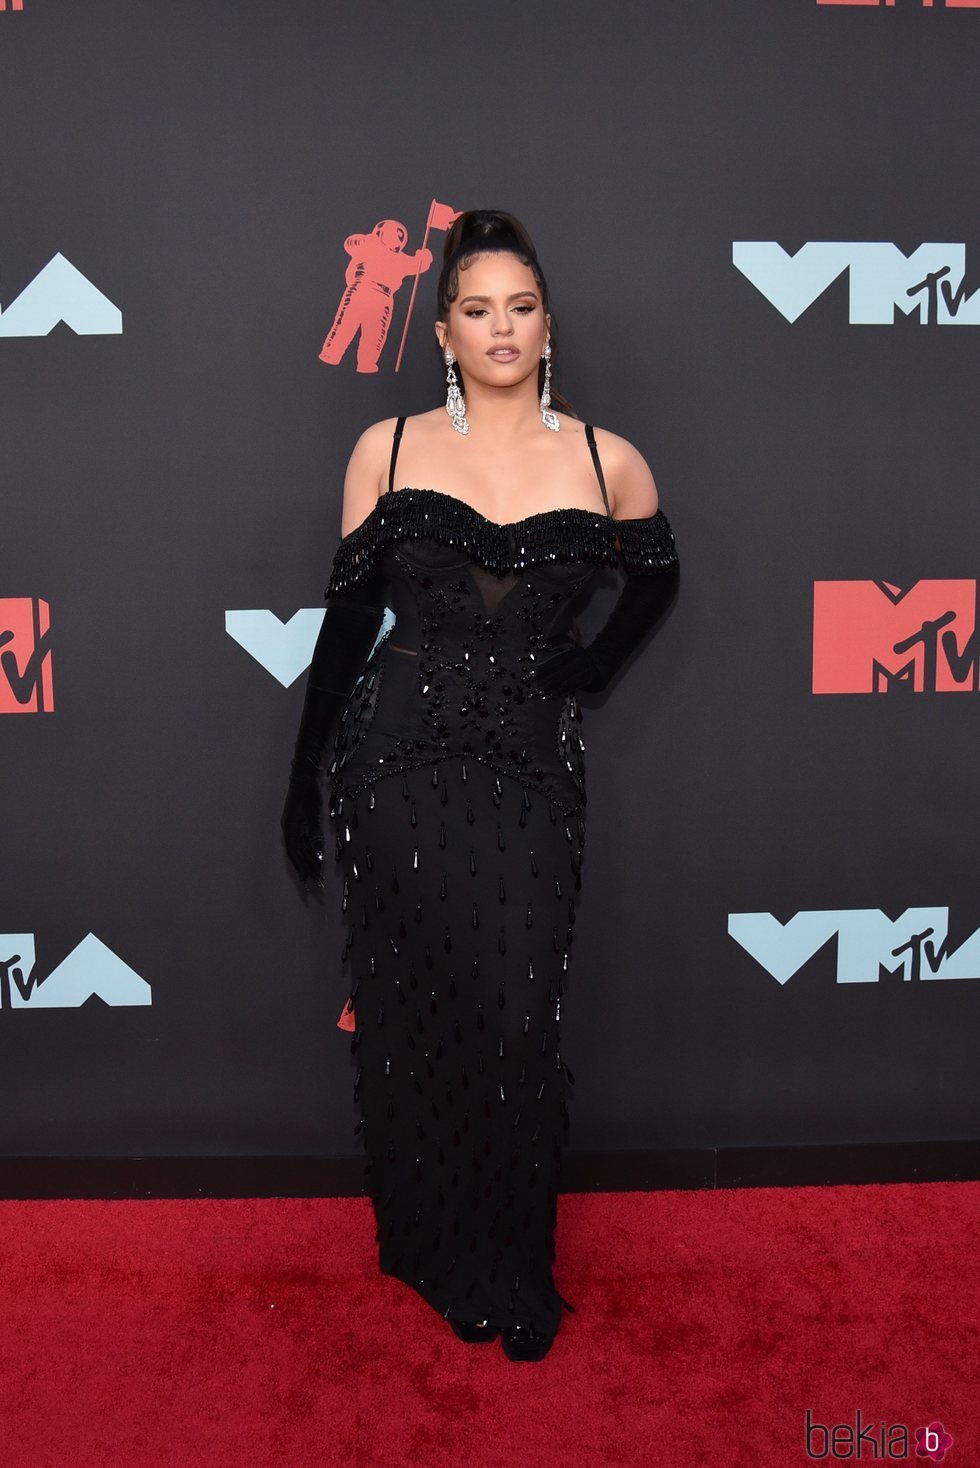 Rosalía de Burberry en la entrega de Premios MTV VMAS 2019